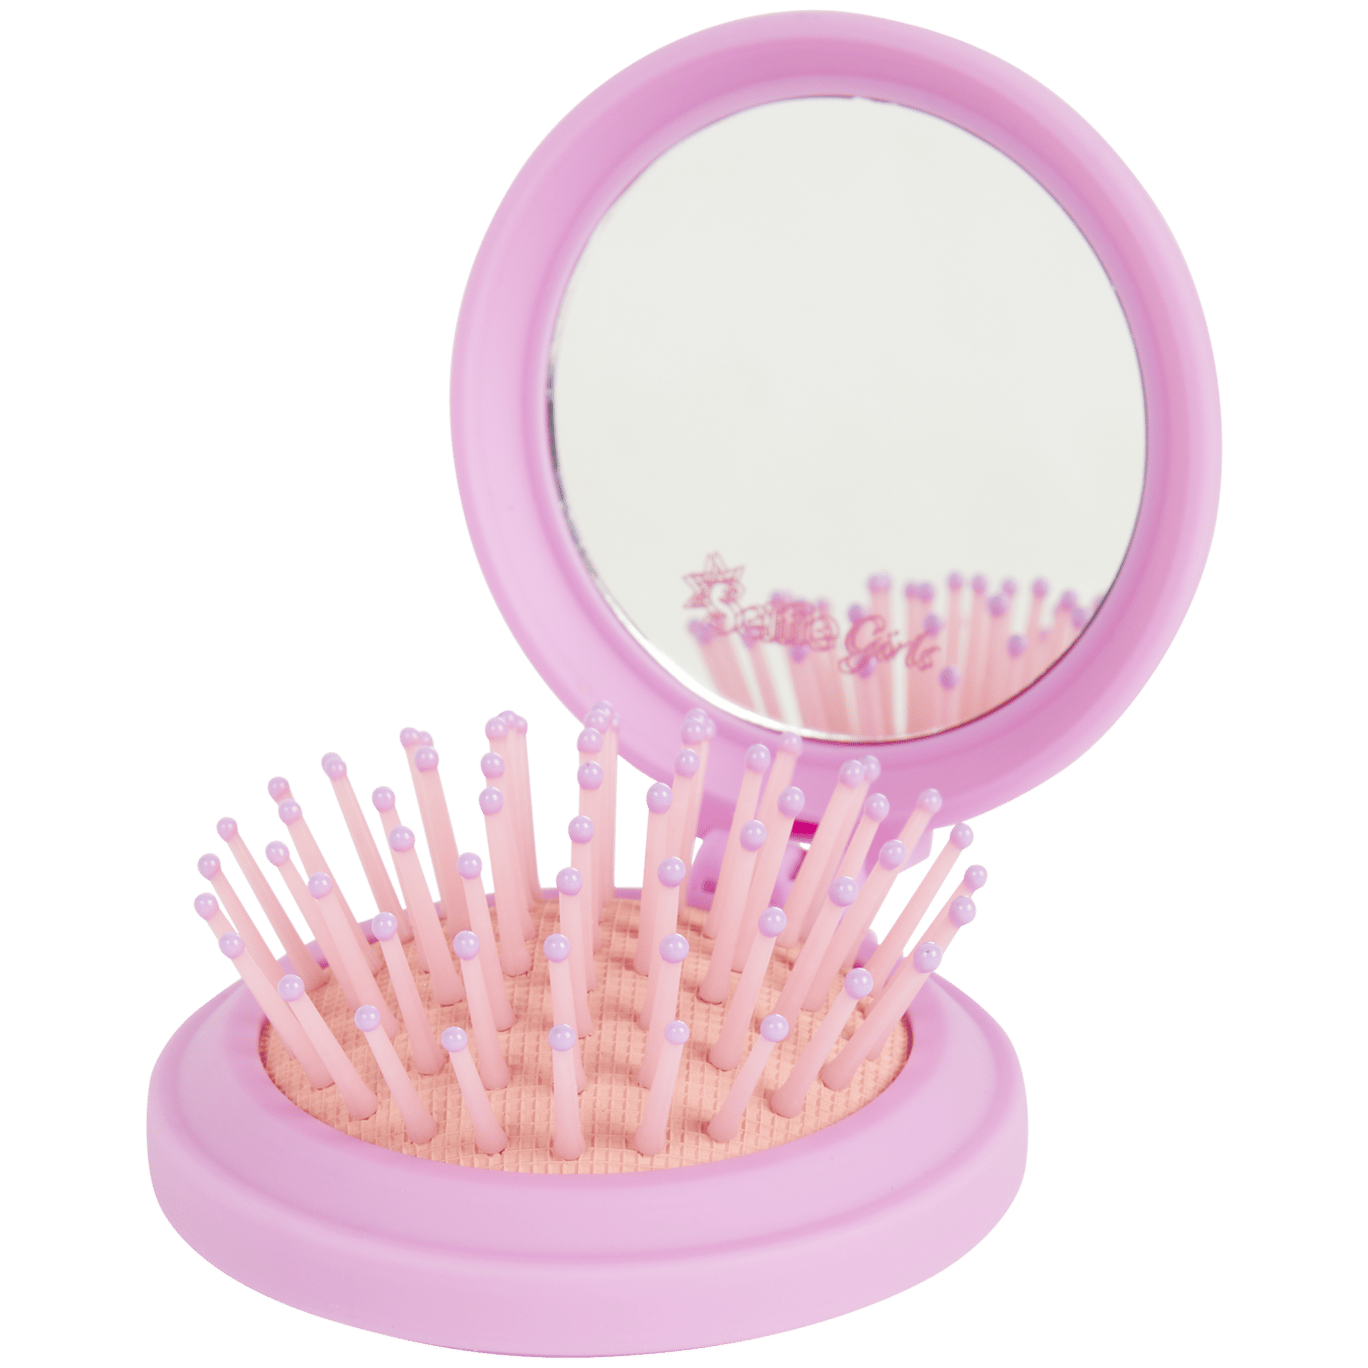 Escova de cabelo com espelho Selfie Girls